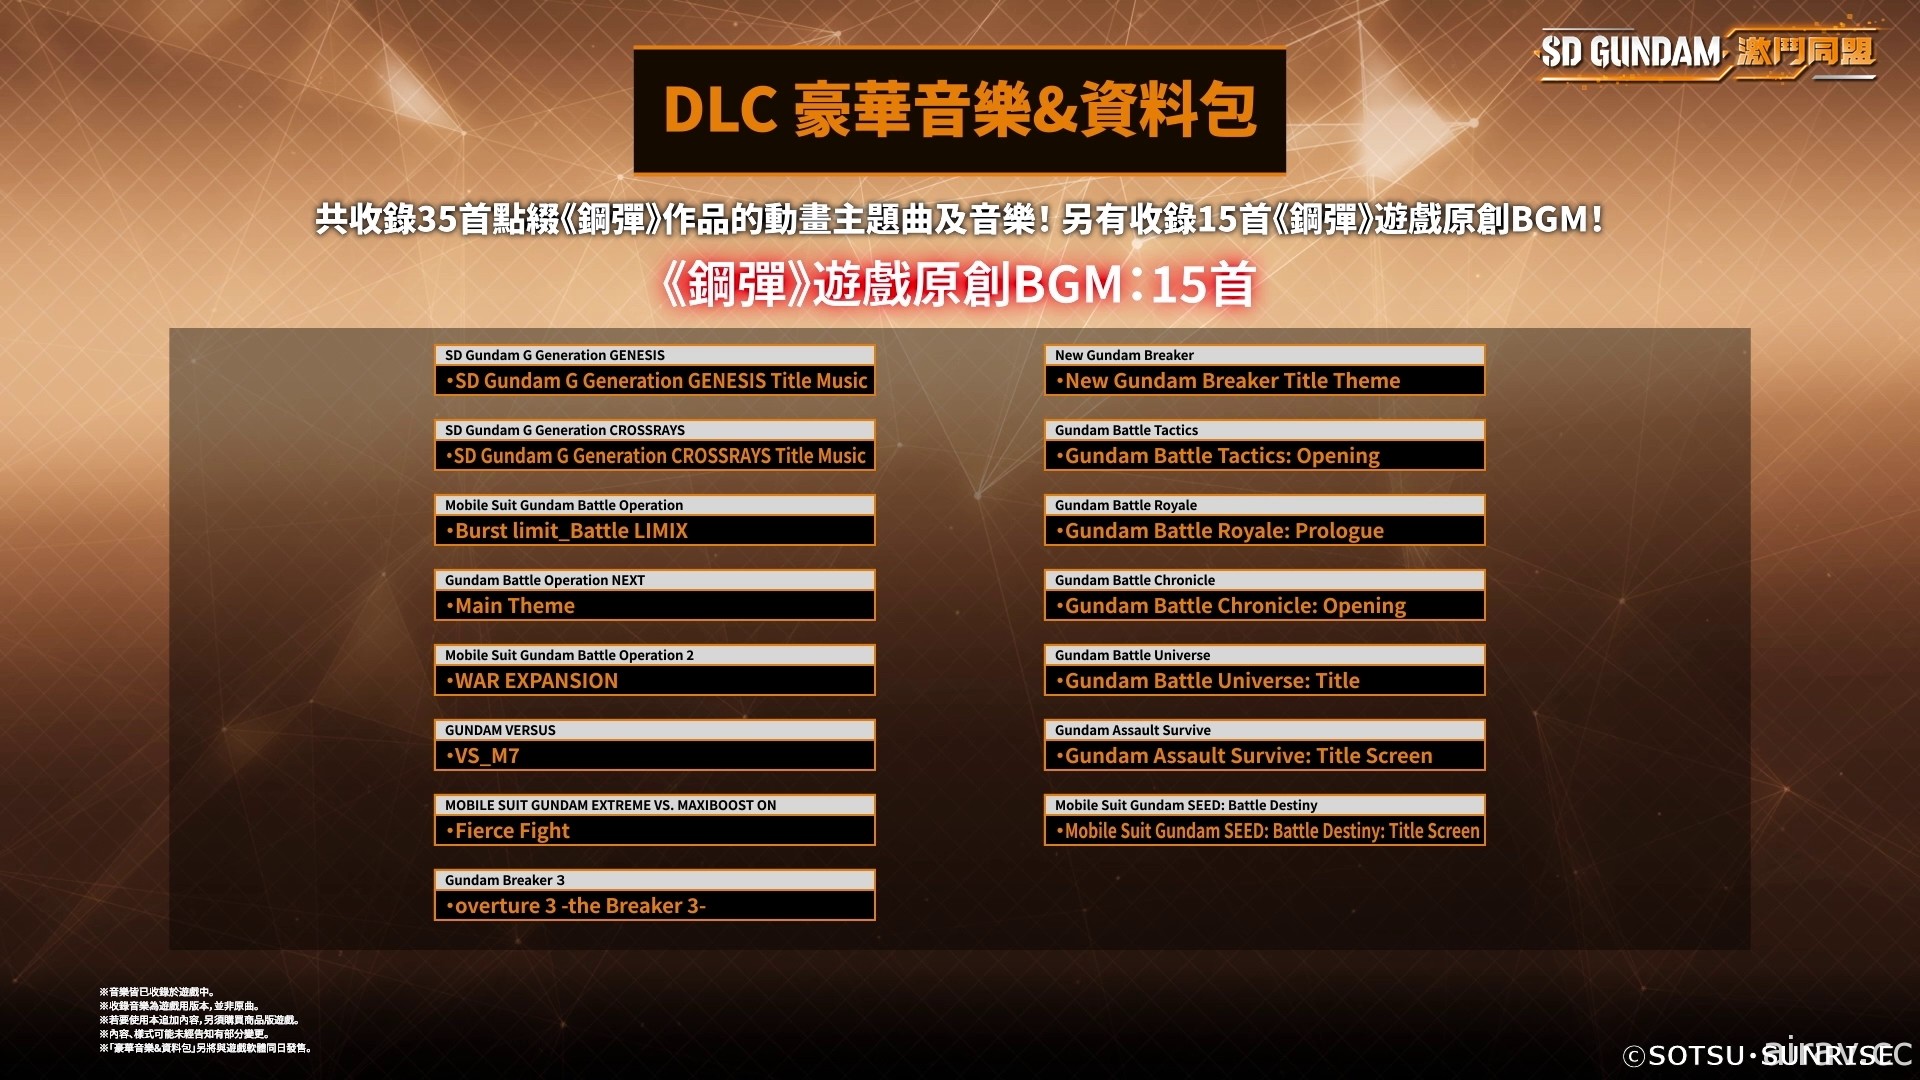 《SD 钢弹 激斗同盟》确定 8/25 上市 同步公开各版本特典及 DLC 内容